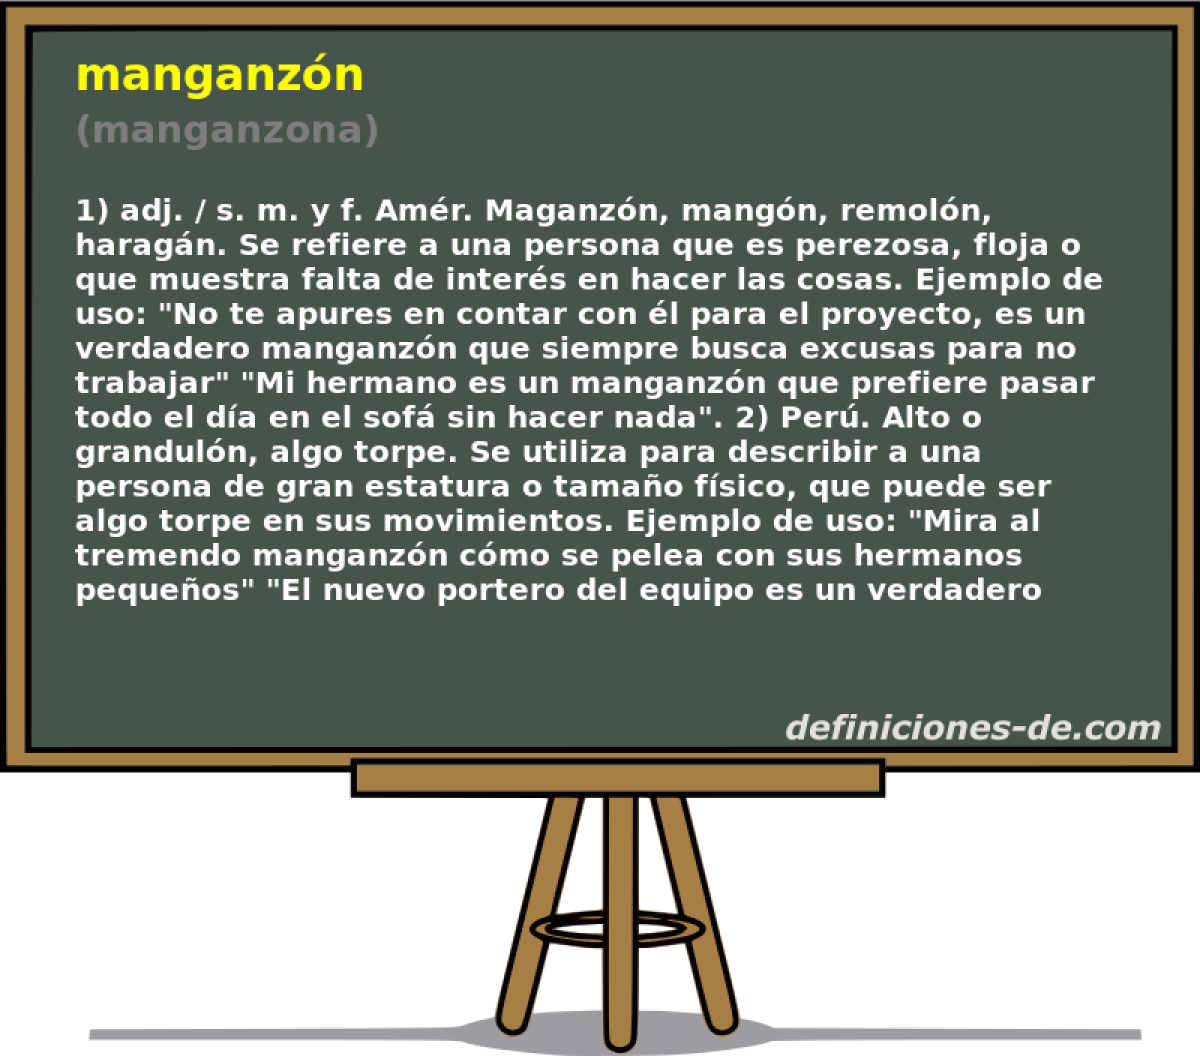 manganzn (manganzona)